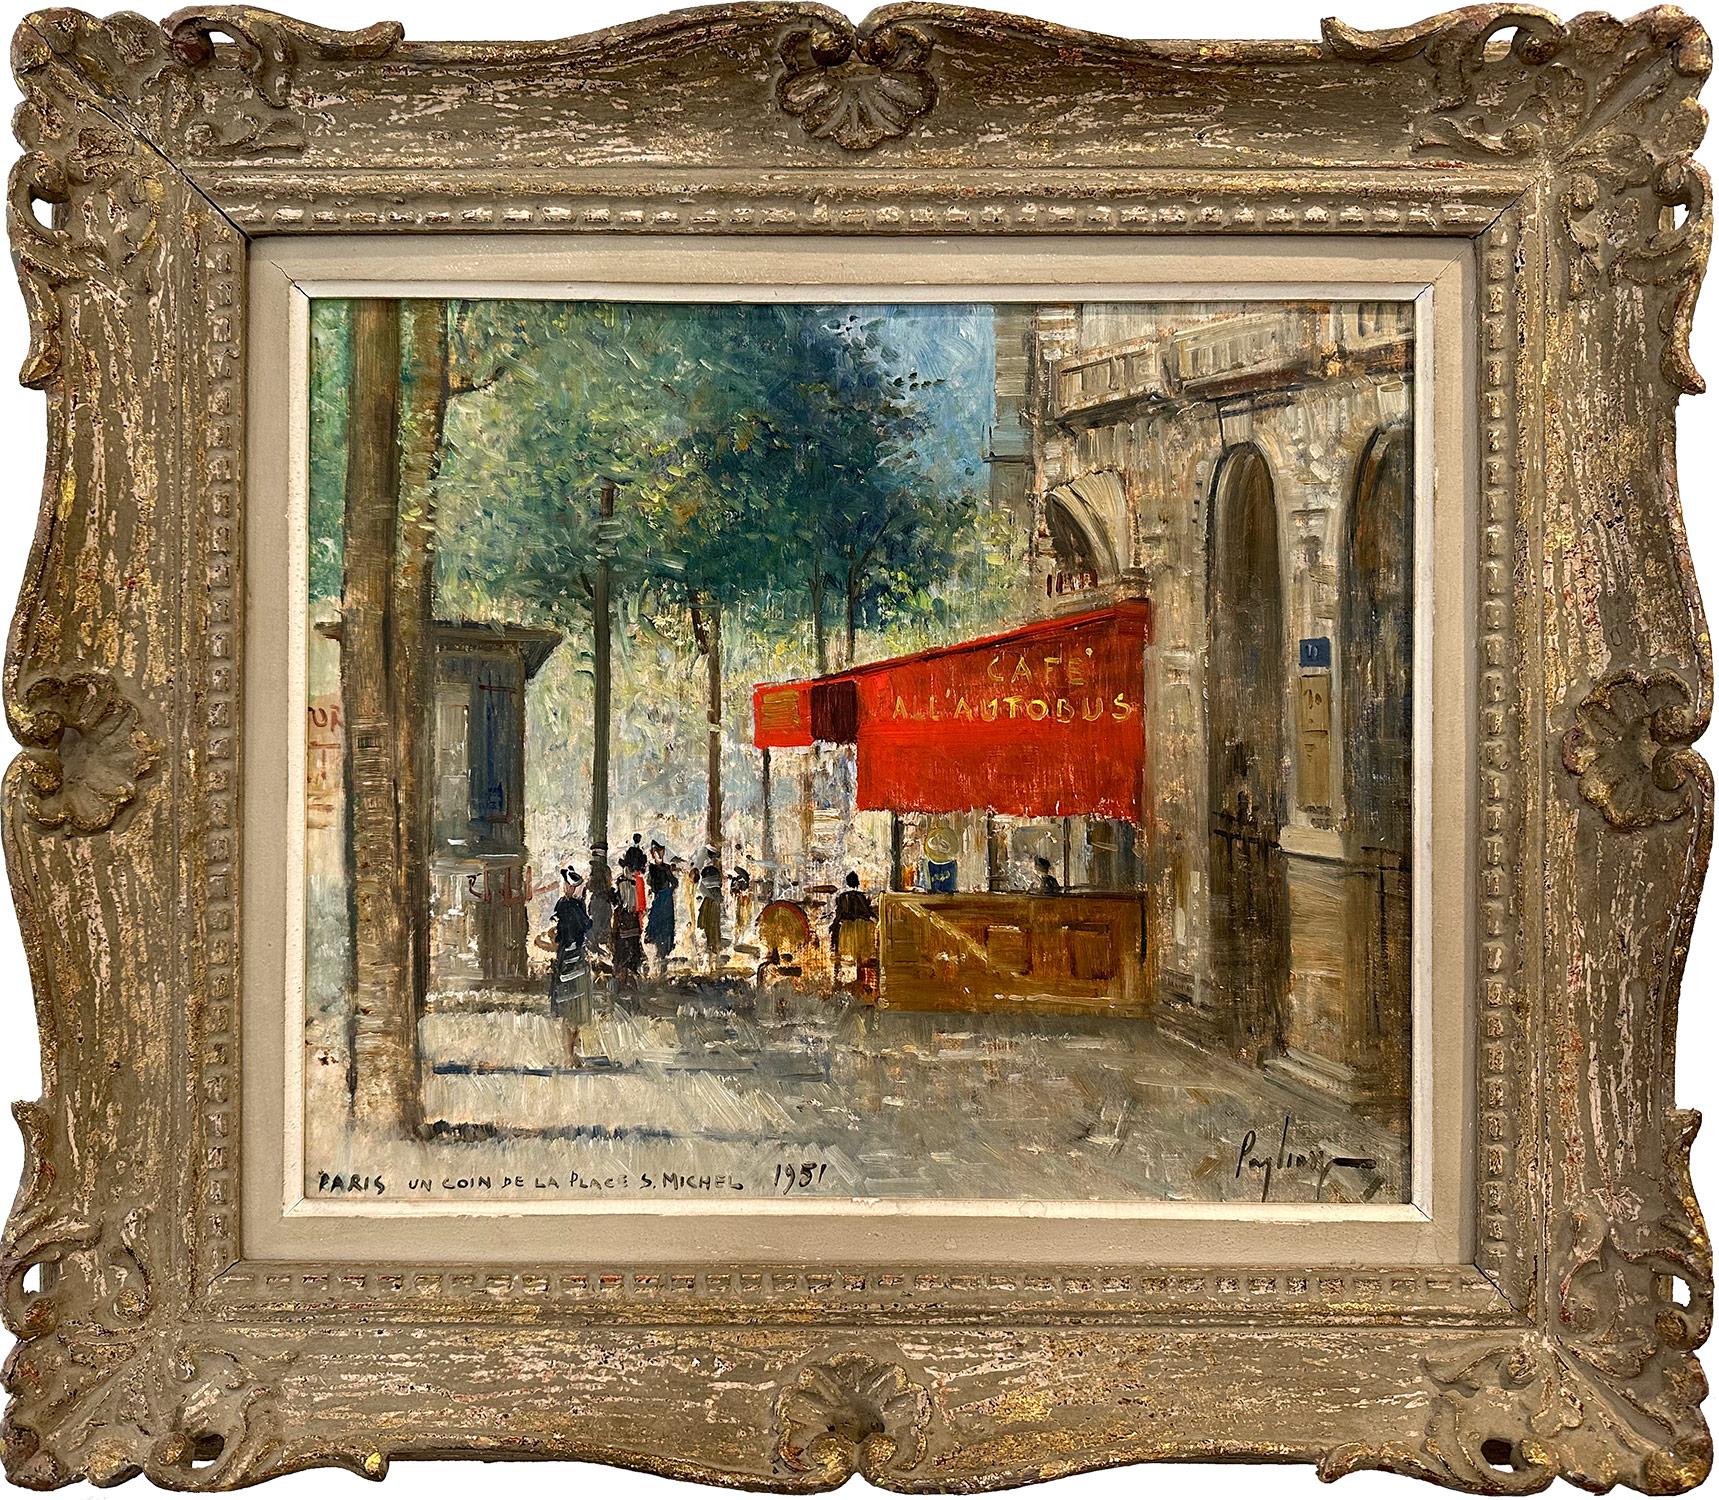  Francesco Pagliazzi Figurative Painting - "Paris, Un Coin De La Place St. Michel" Impressionist Oil Painting on Canvas